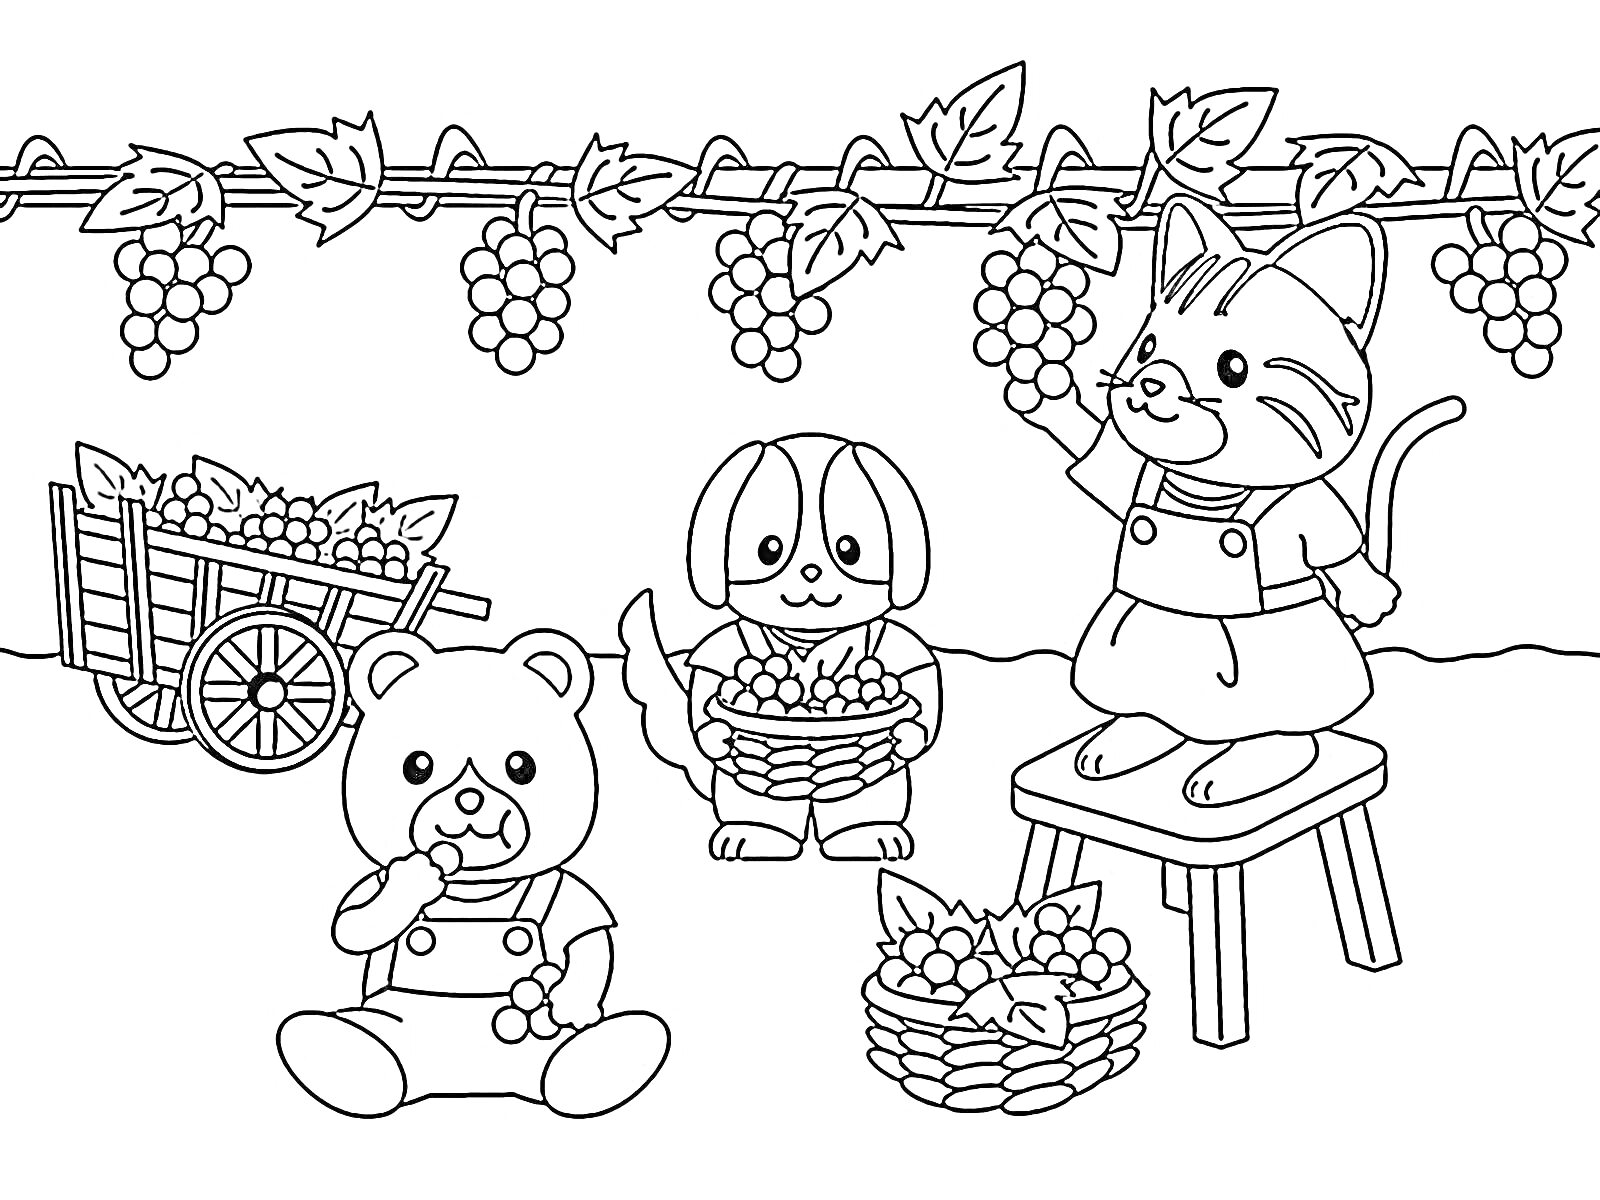 Раскраска Силваниан Фэмилиес собирают виноград: мишка ест виноград, собачка держит корзину с виноградом, кошка на скамейке с виноградом, тележка с виноградом